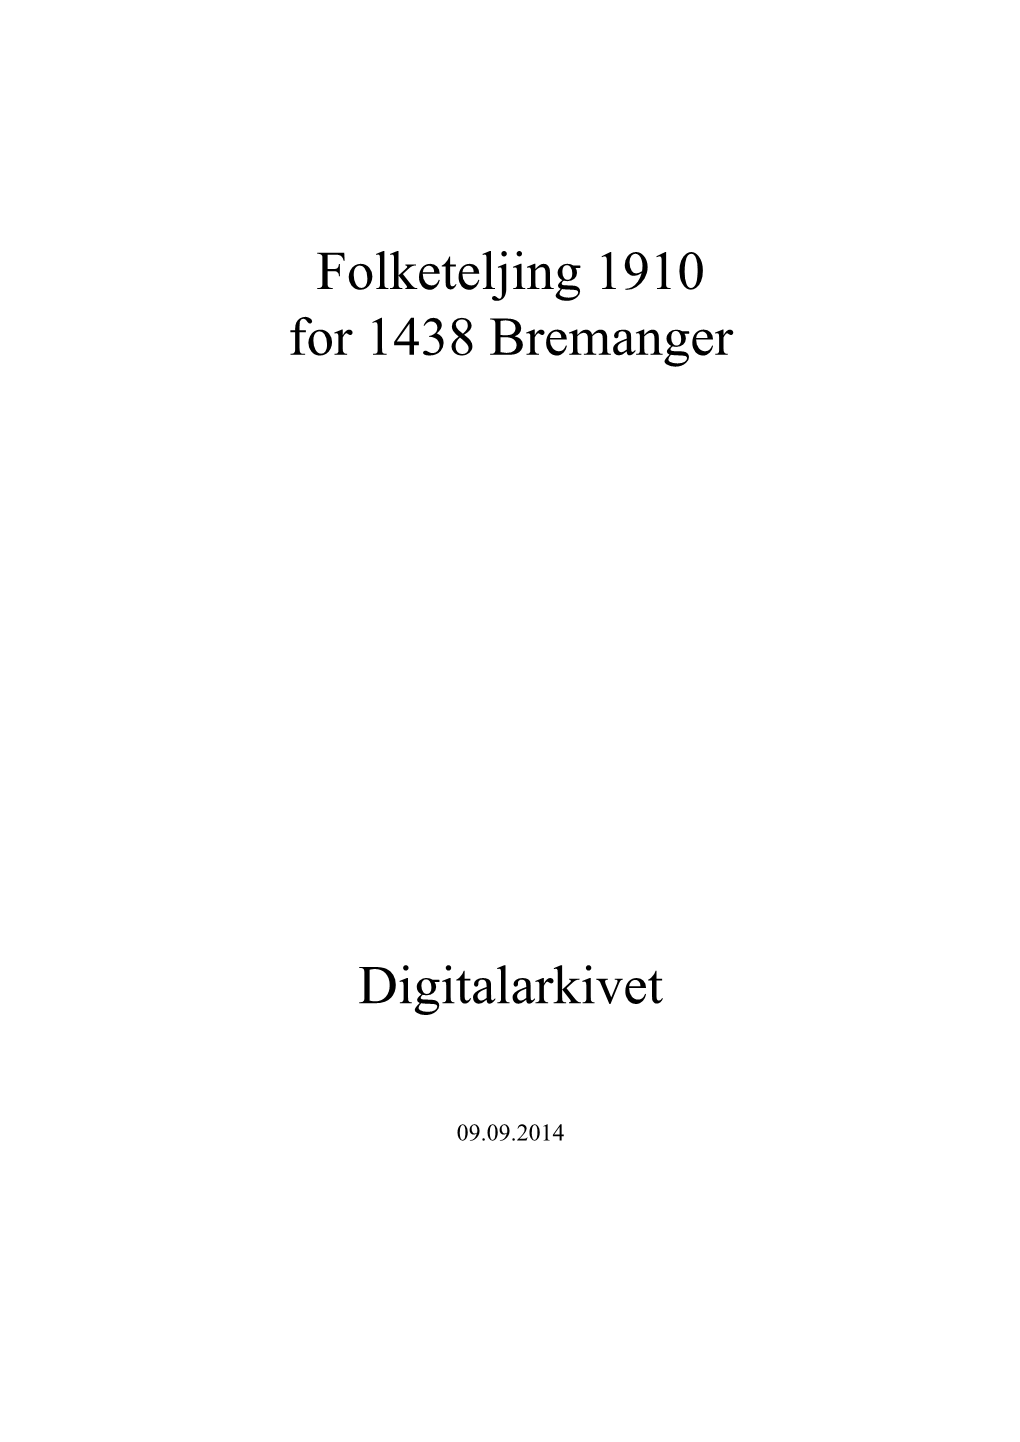 Folketeljing 1910 for 1438 Bremanger Digitalarkivet